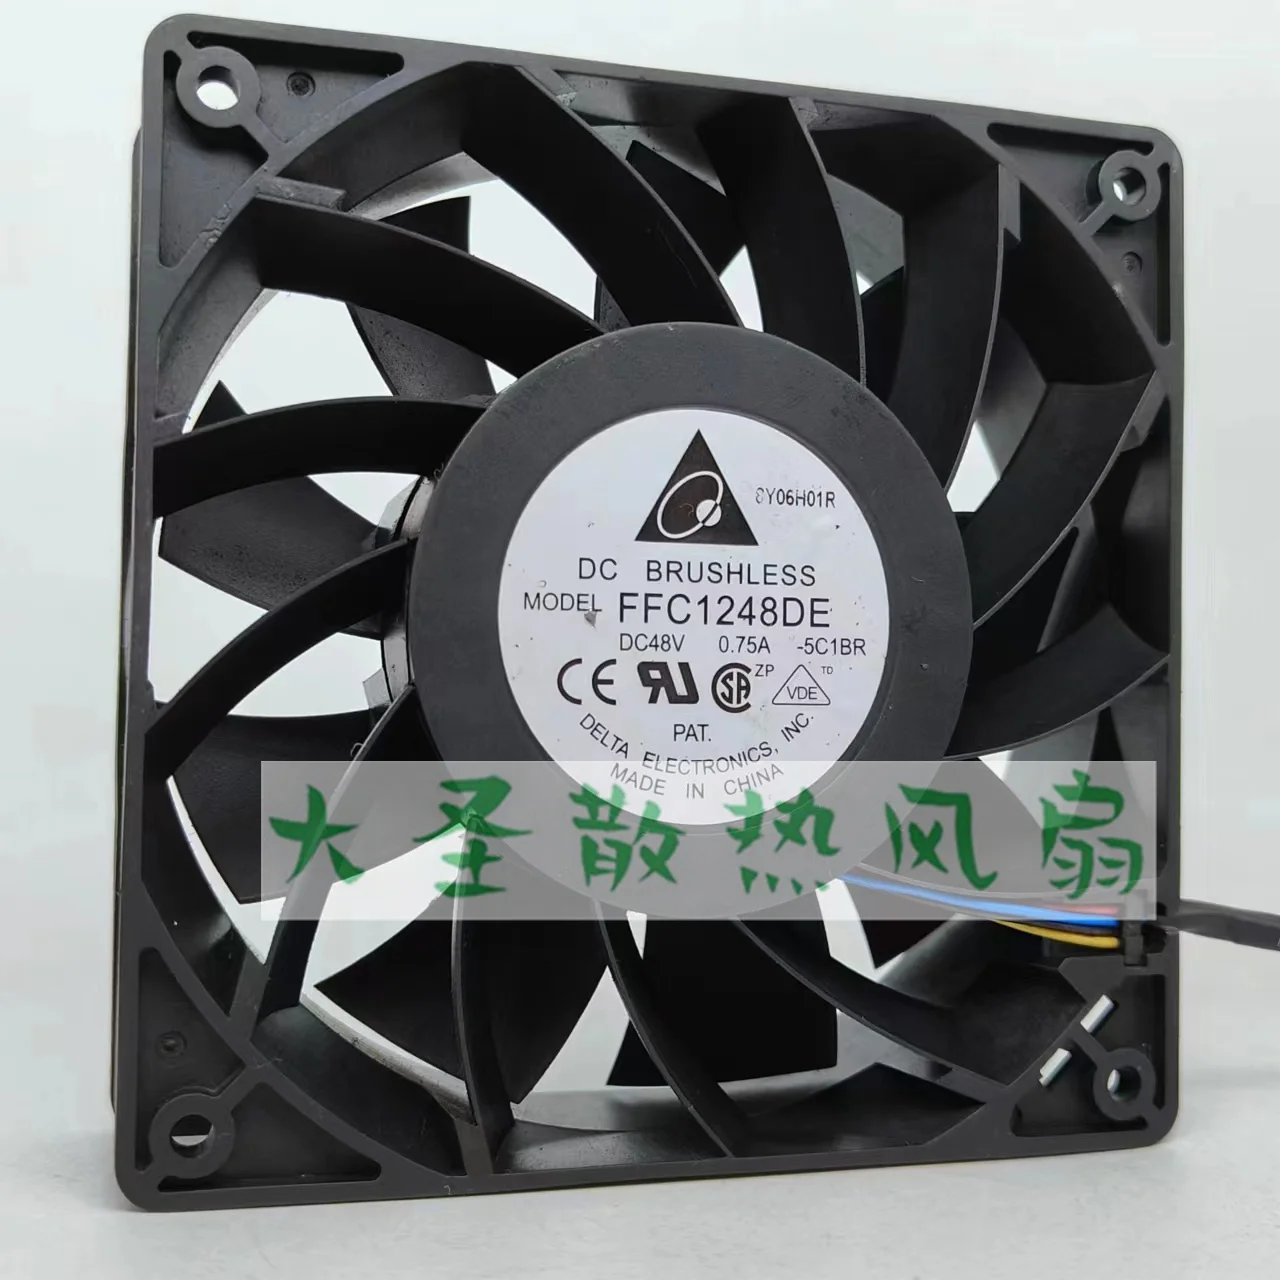 

Delta FFC1248DE 5C1BR DC 48V 0.75A 120x120x38mm 4-Wire Server Cooling Fan